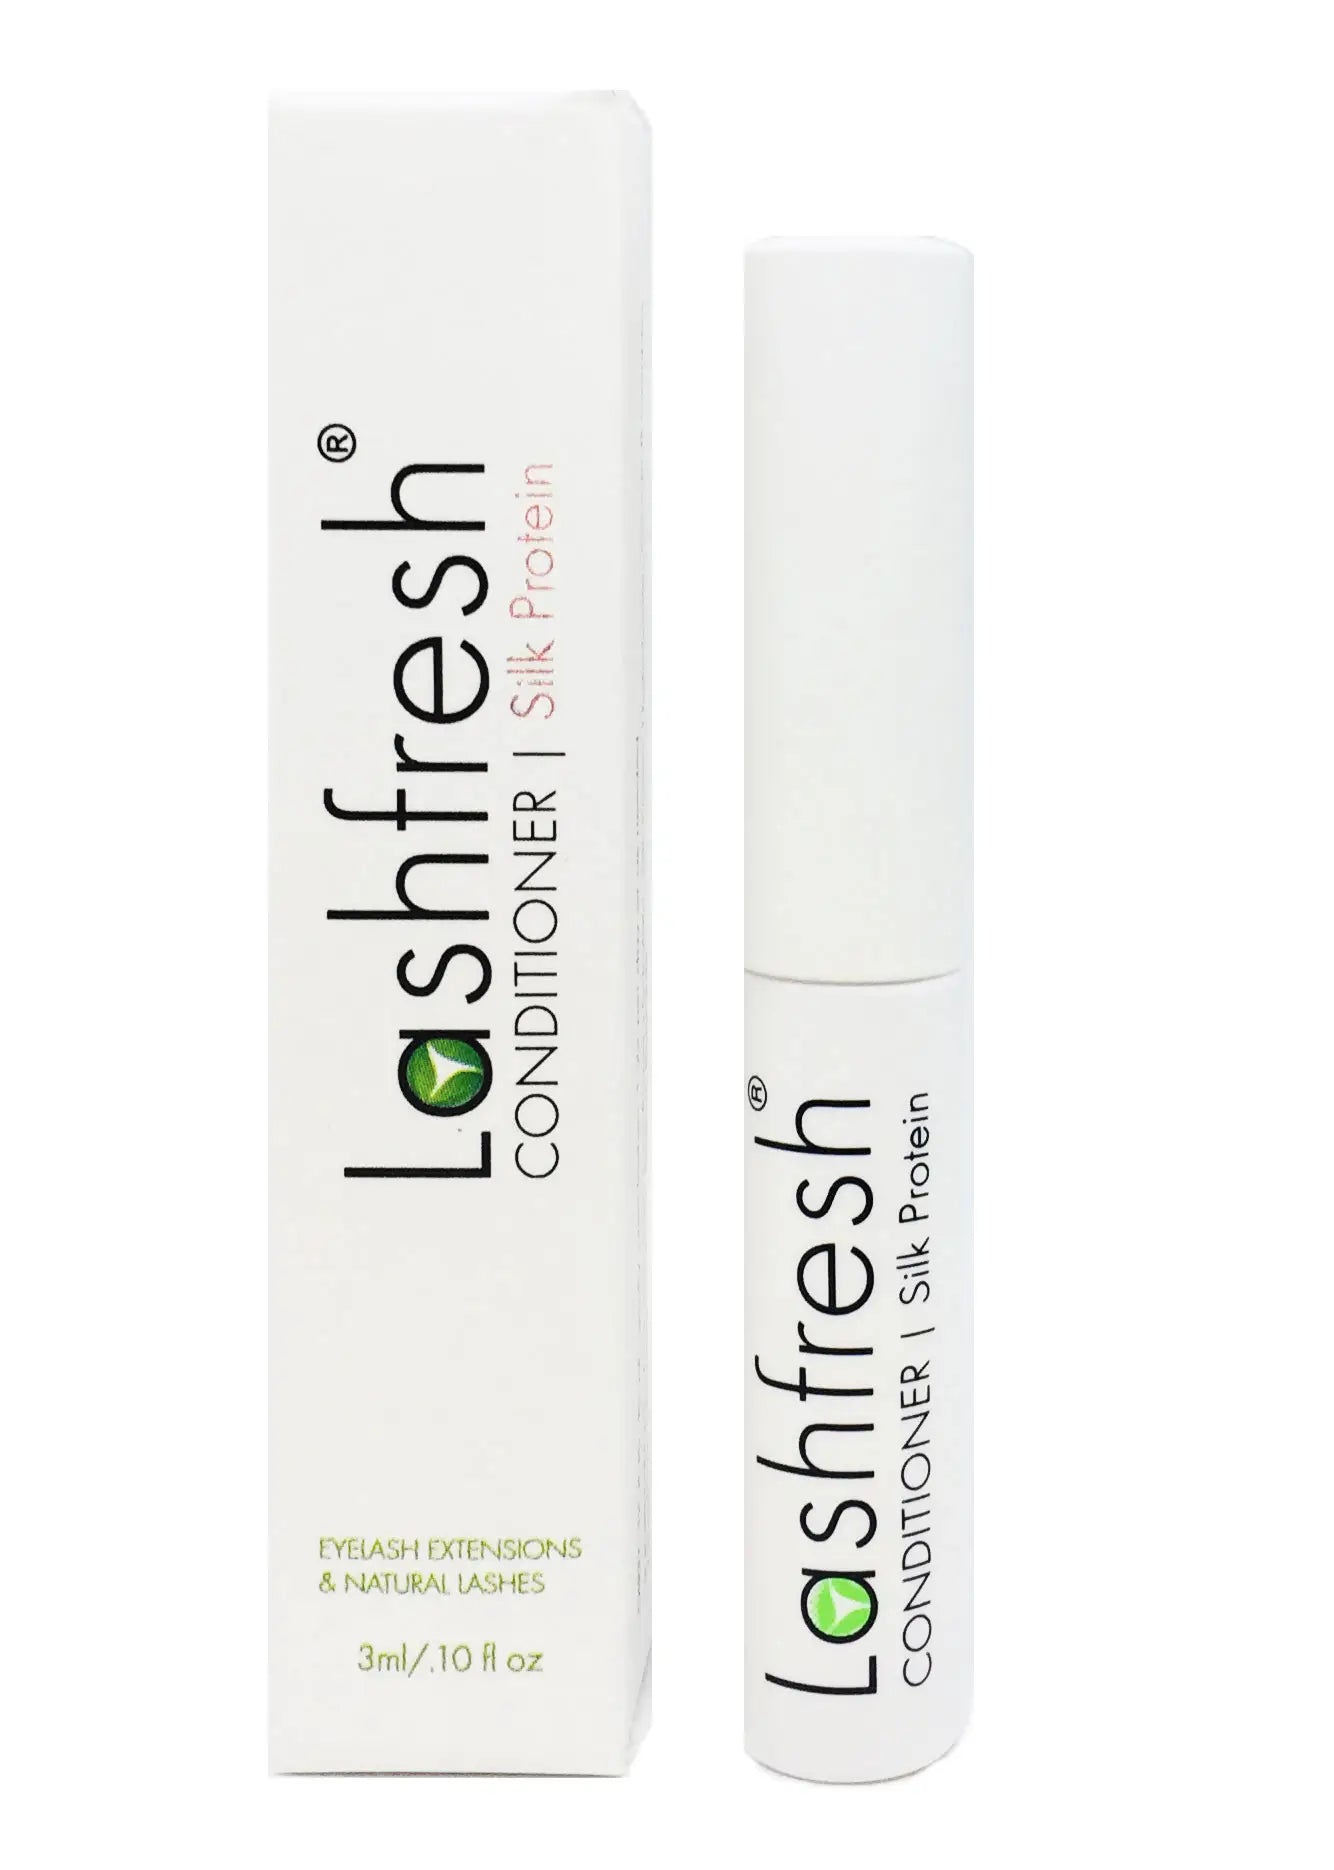 Lashfresh Eyelash Extension Conditioner with Silk Protein (Organic), 3ml